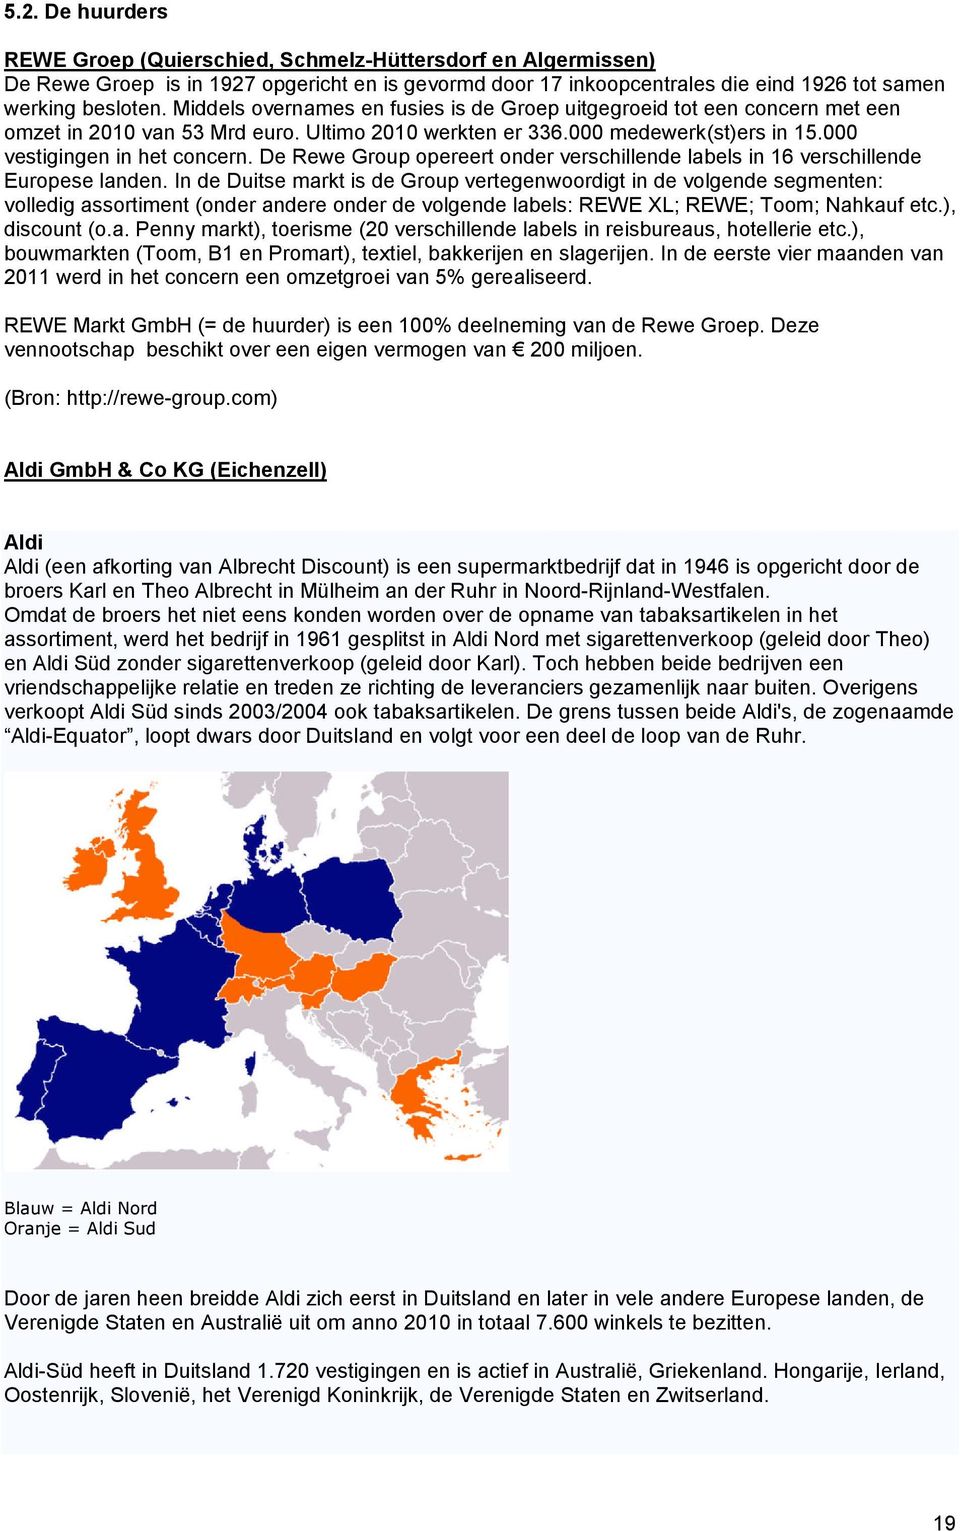 De Rewe Group opereert onder verschillende labels in 16 verschillende Europese landen.